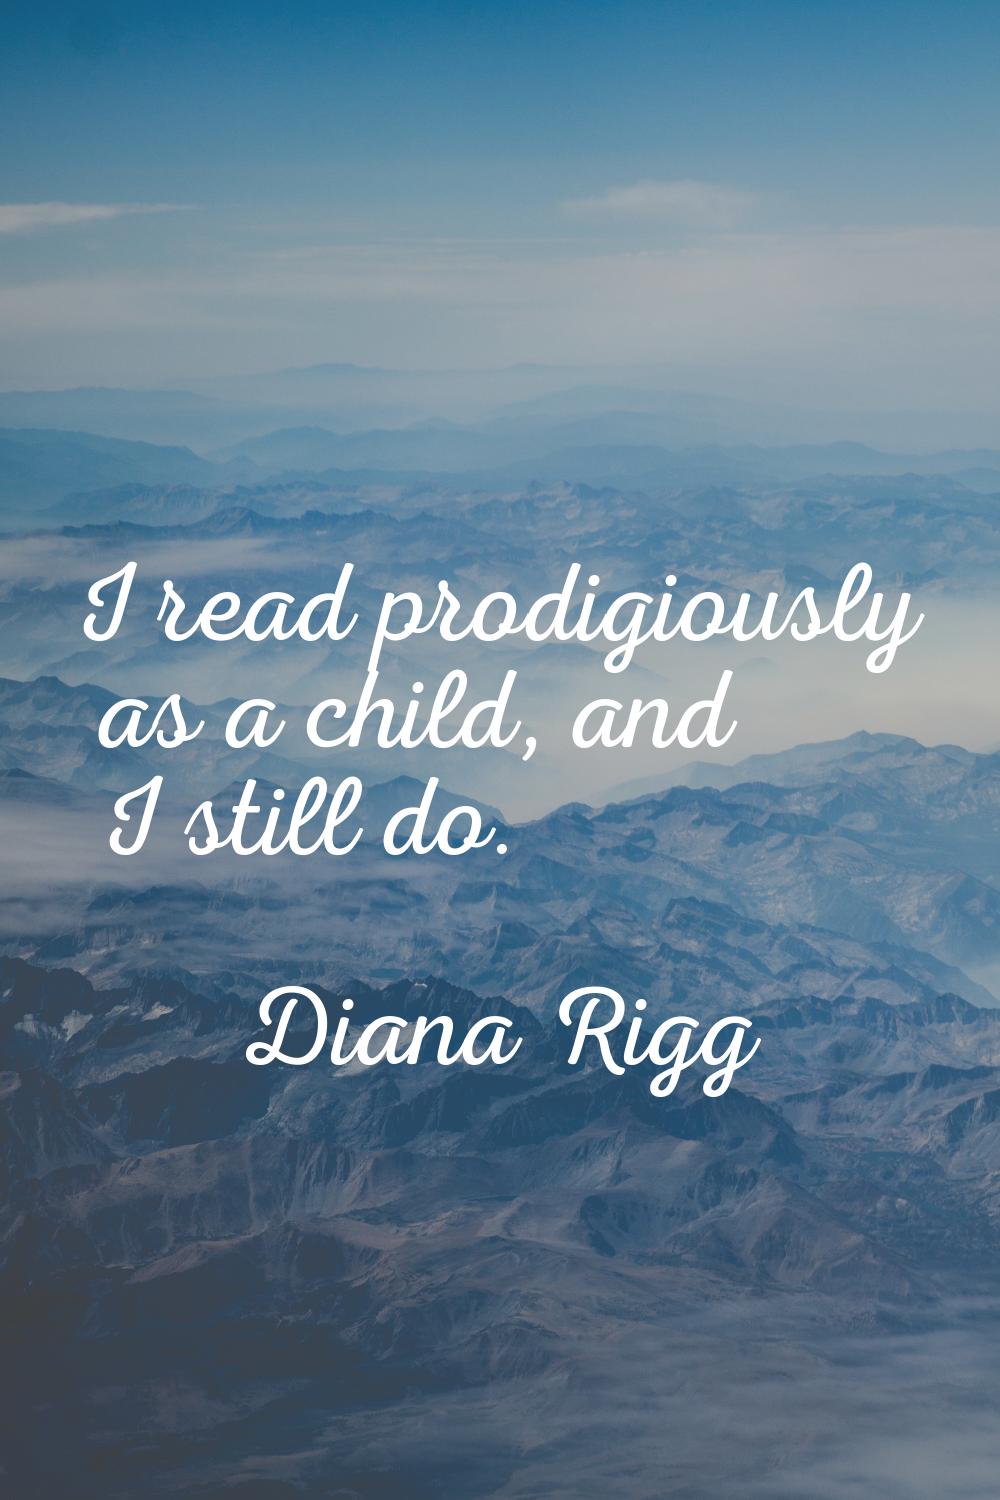 I read prodigiously as a child, and I still do.